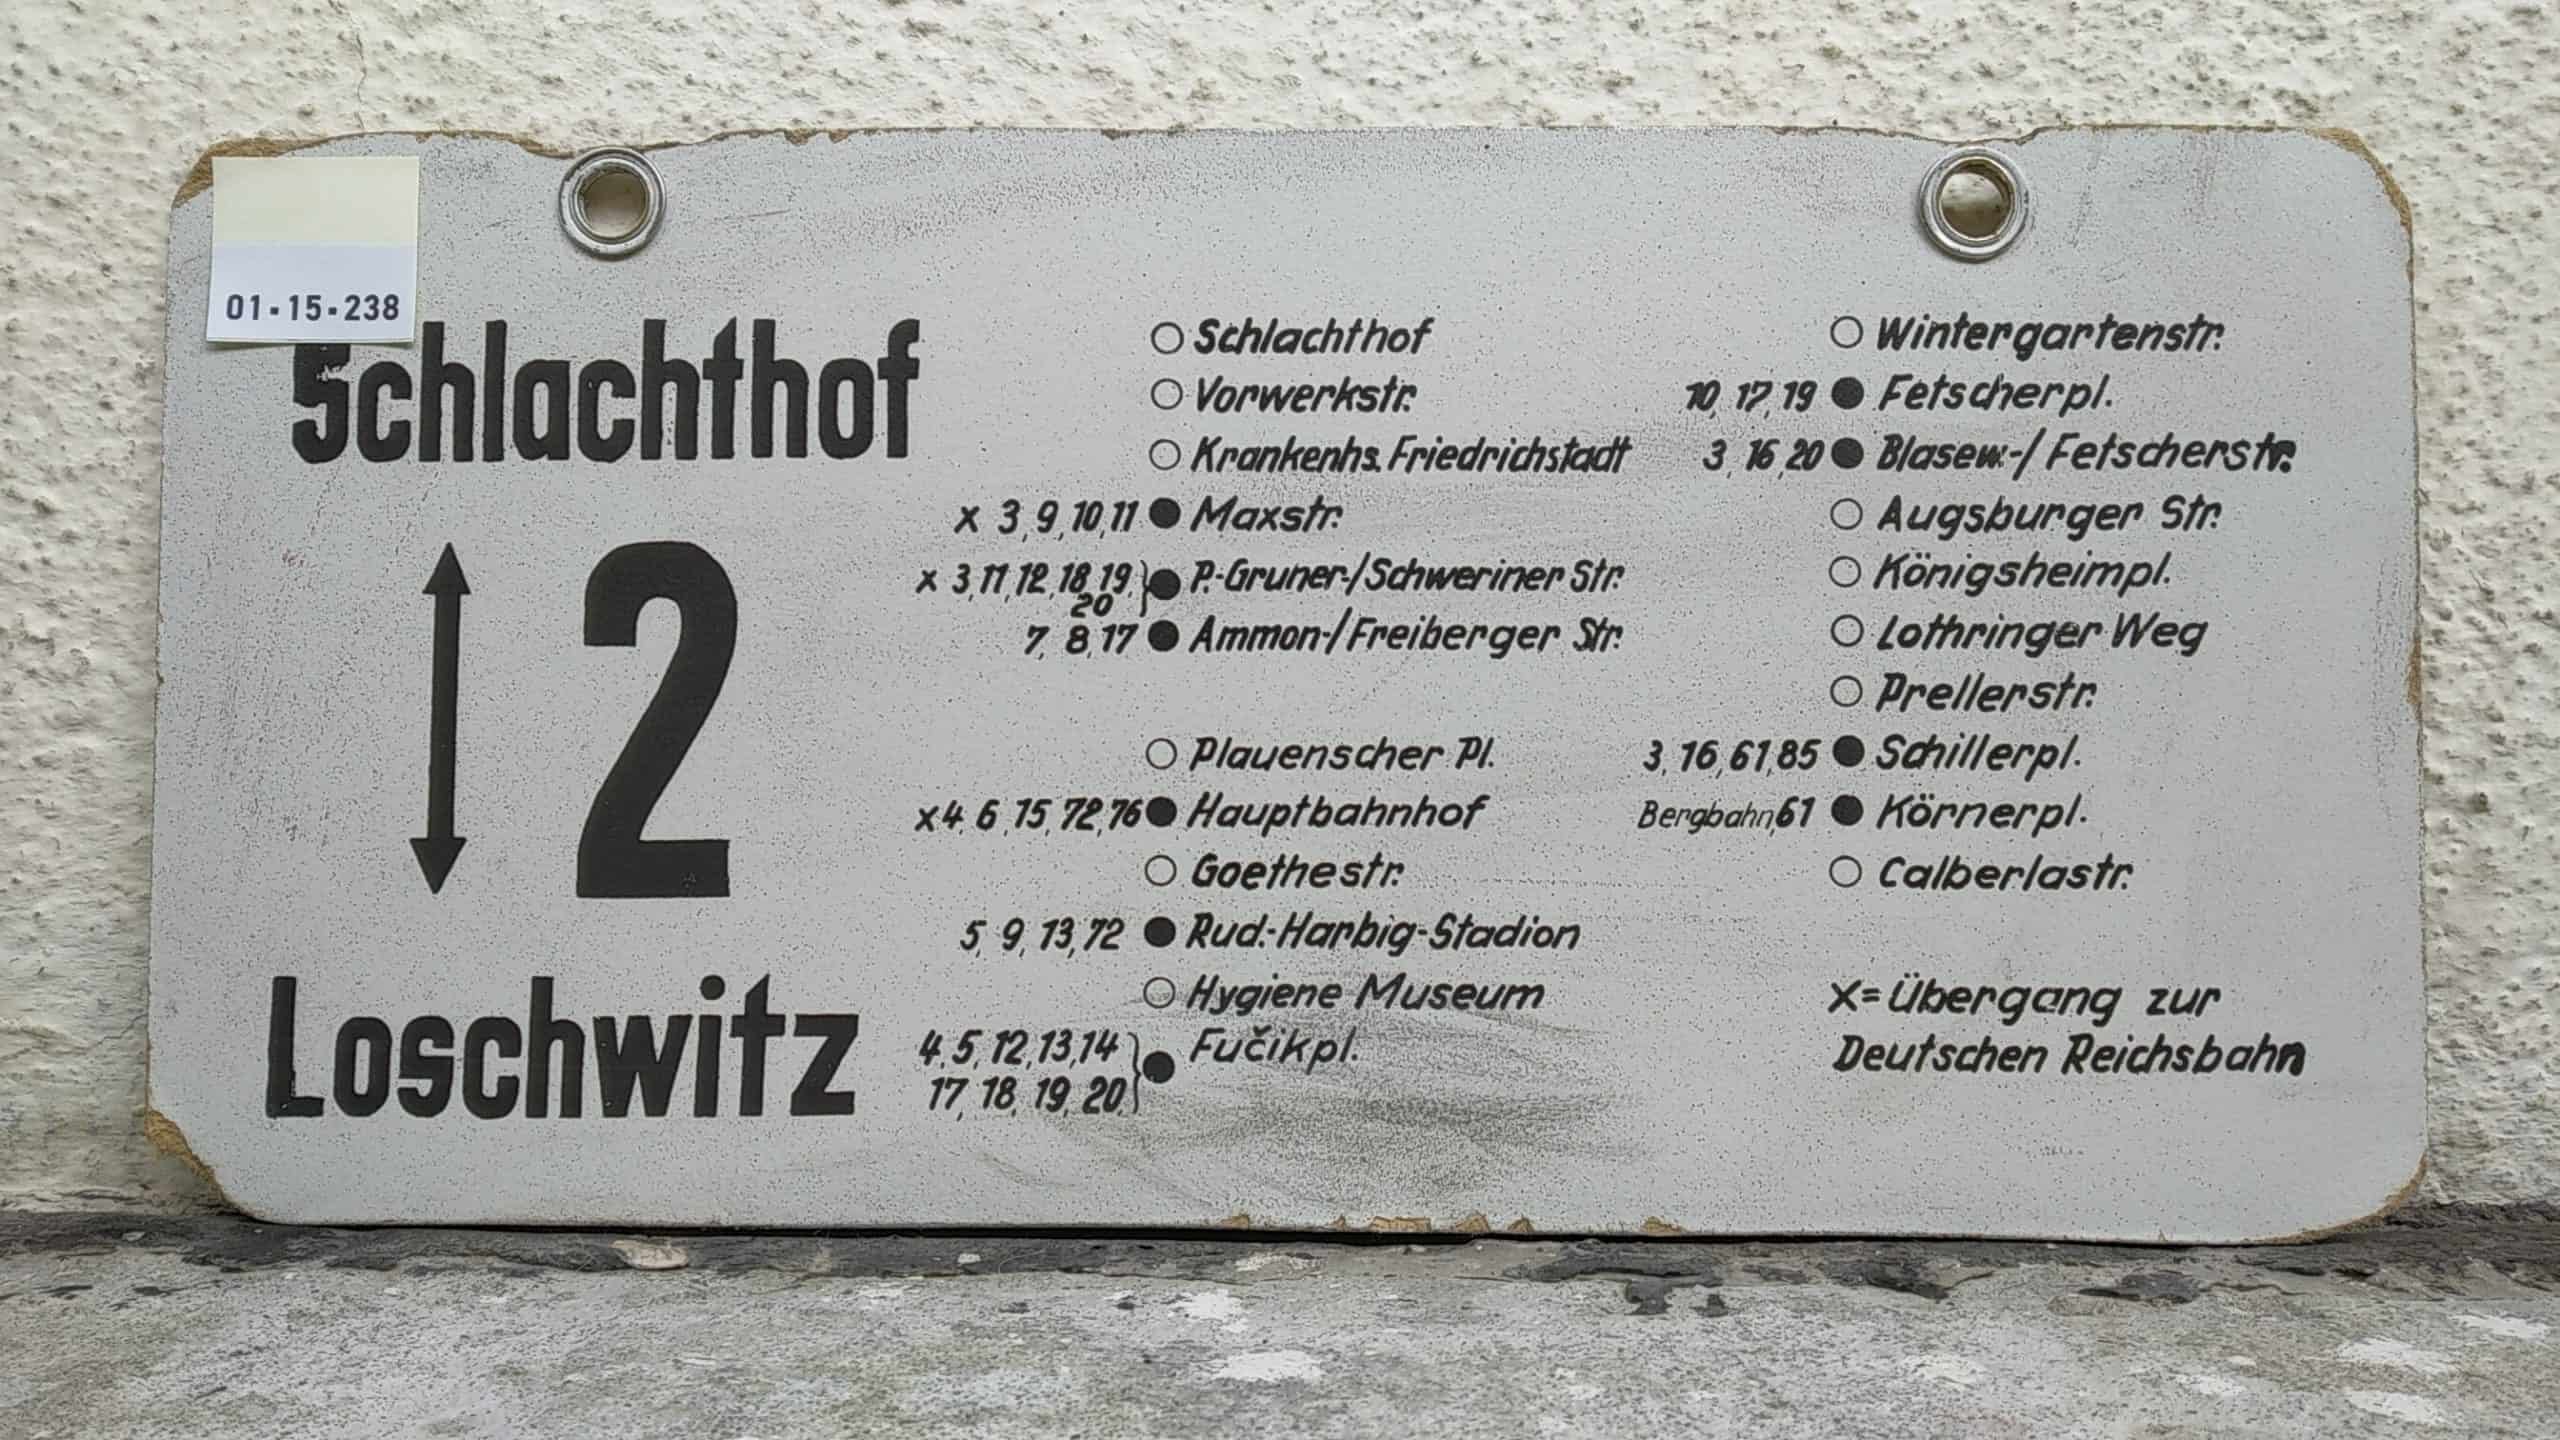 Ein seltenes Straßenbahn-Linienschild aus Dresden der Linie 2 von Schlachthof nach Loschwitz #2